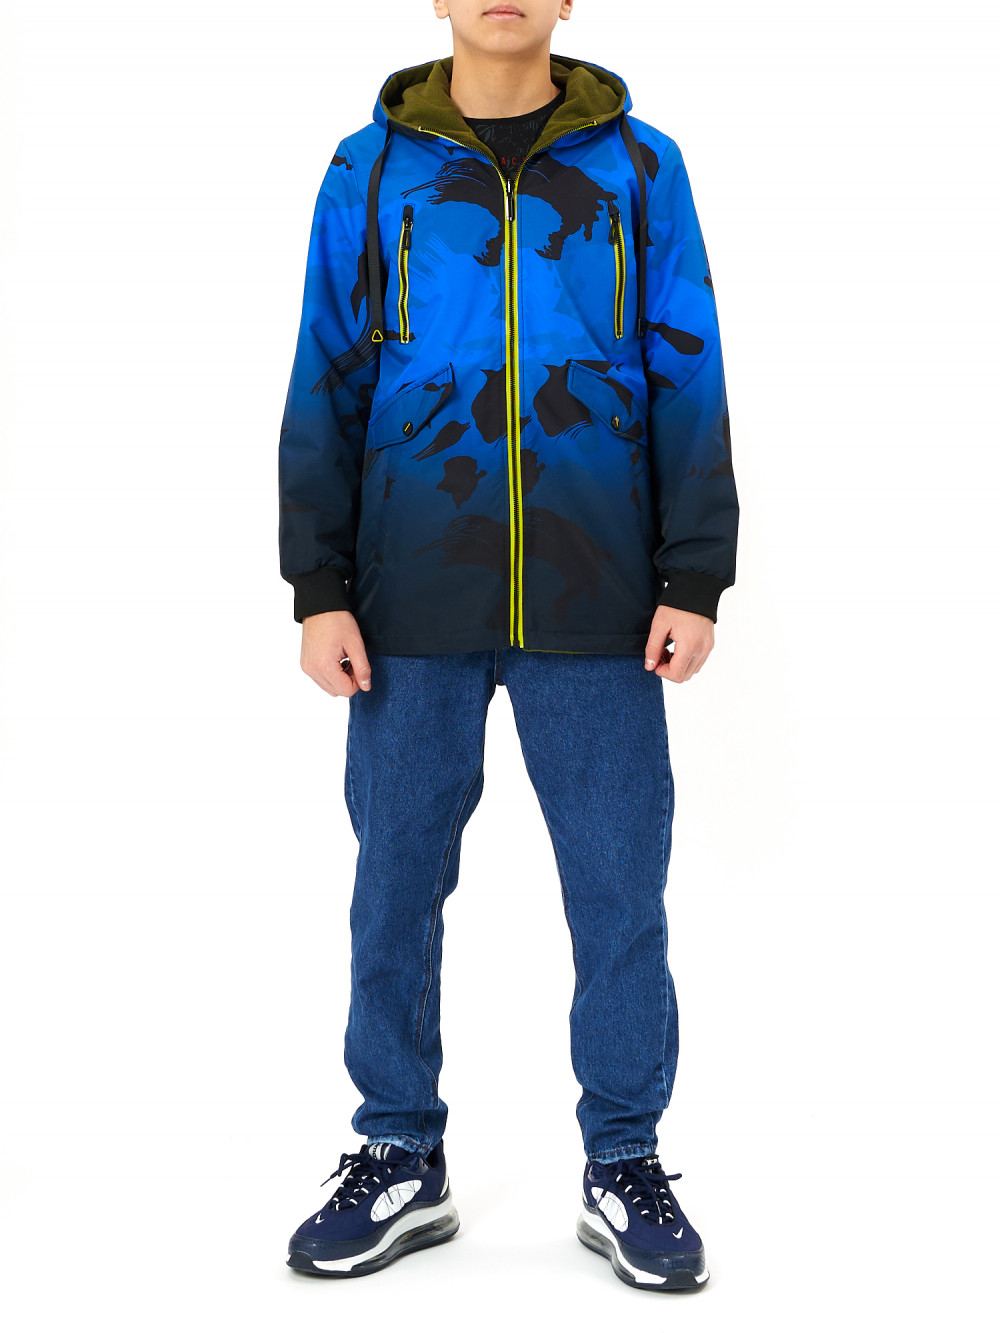 фото Куртка детская для мальчиков nobrand ad221 цвет синий размер 134